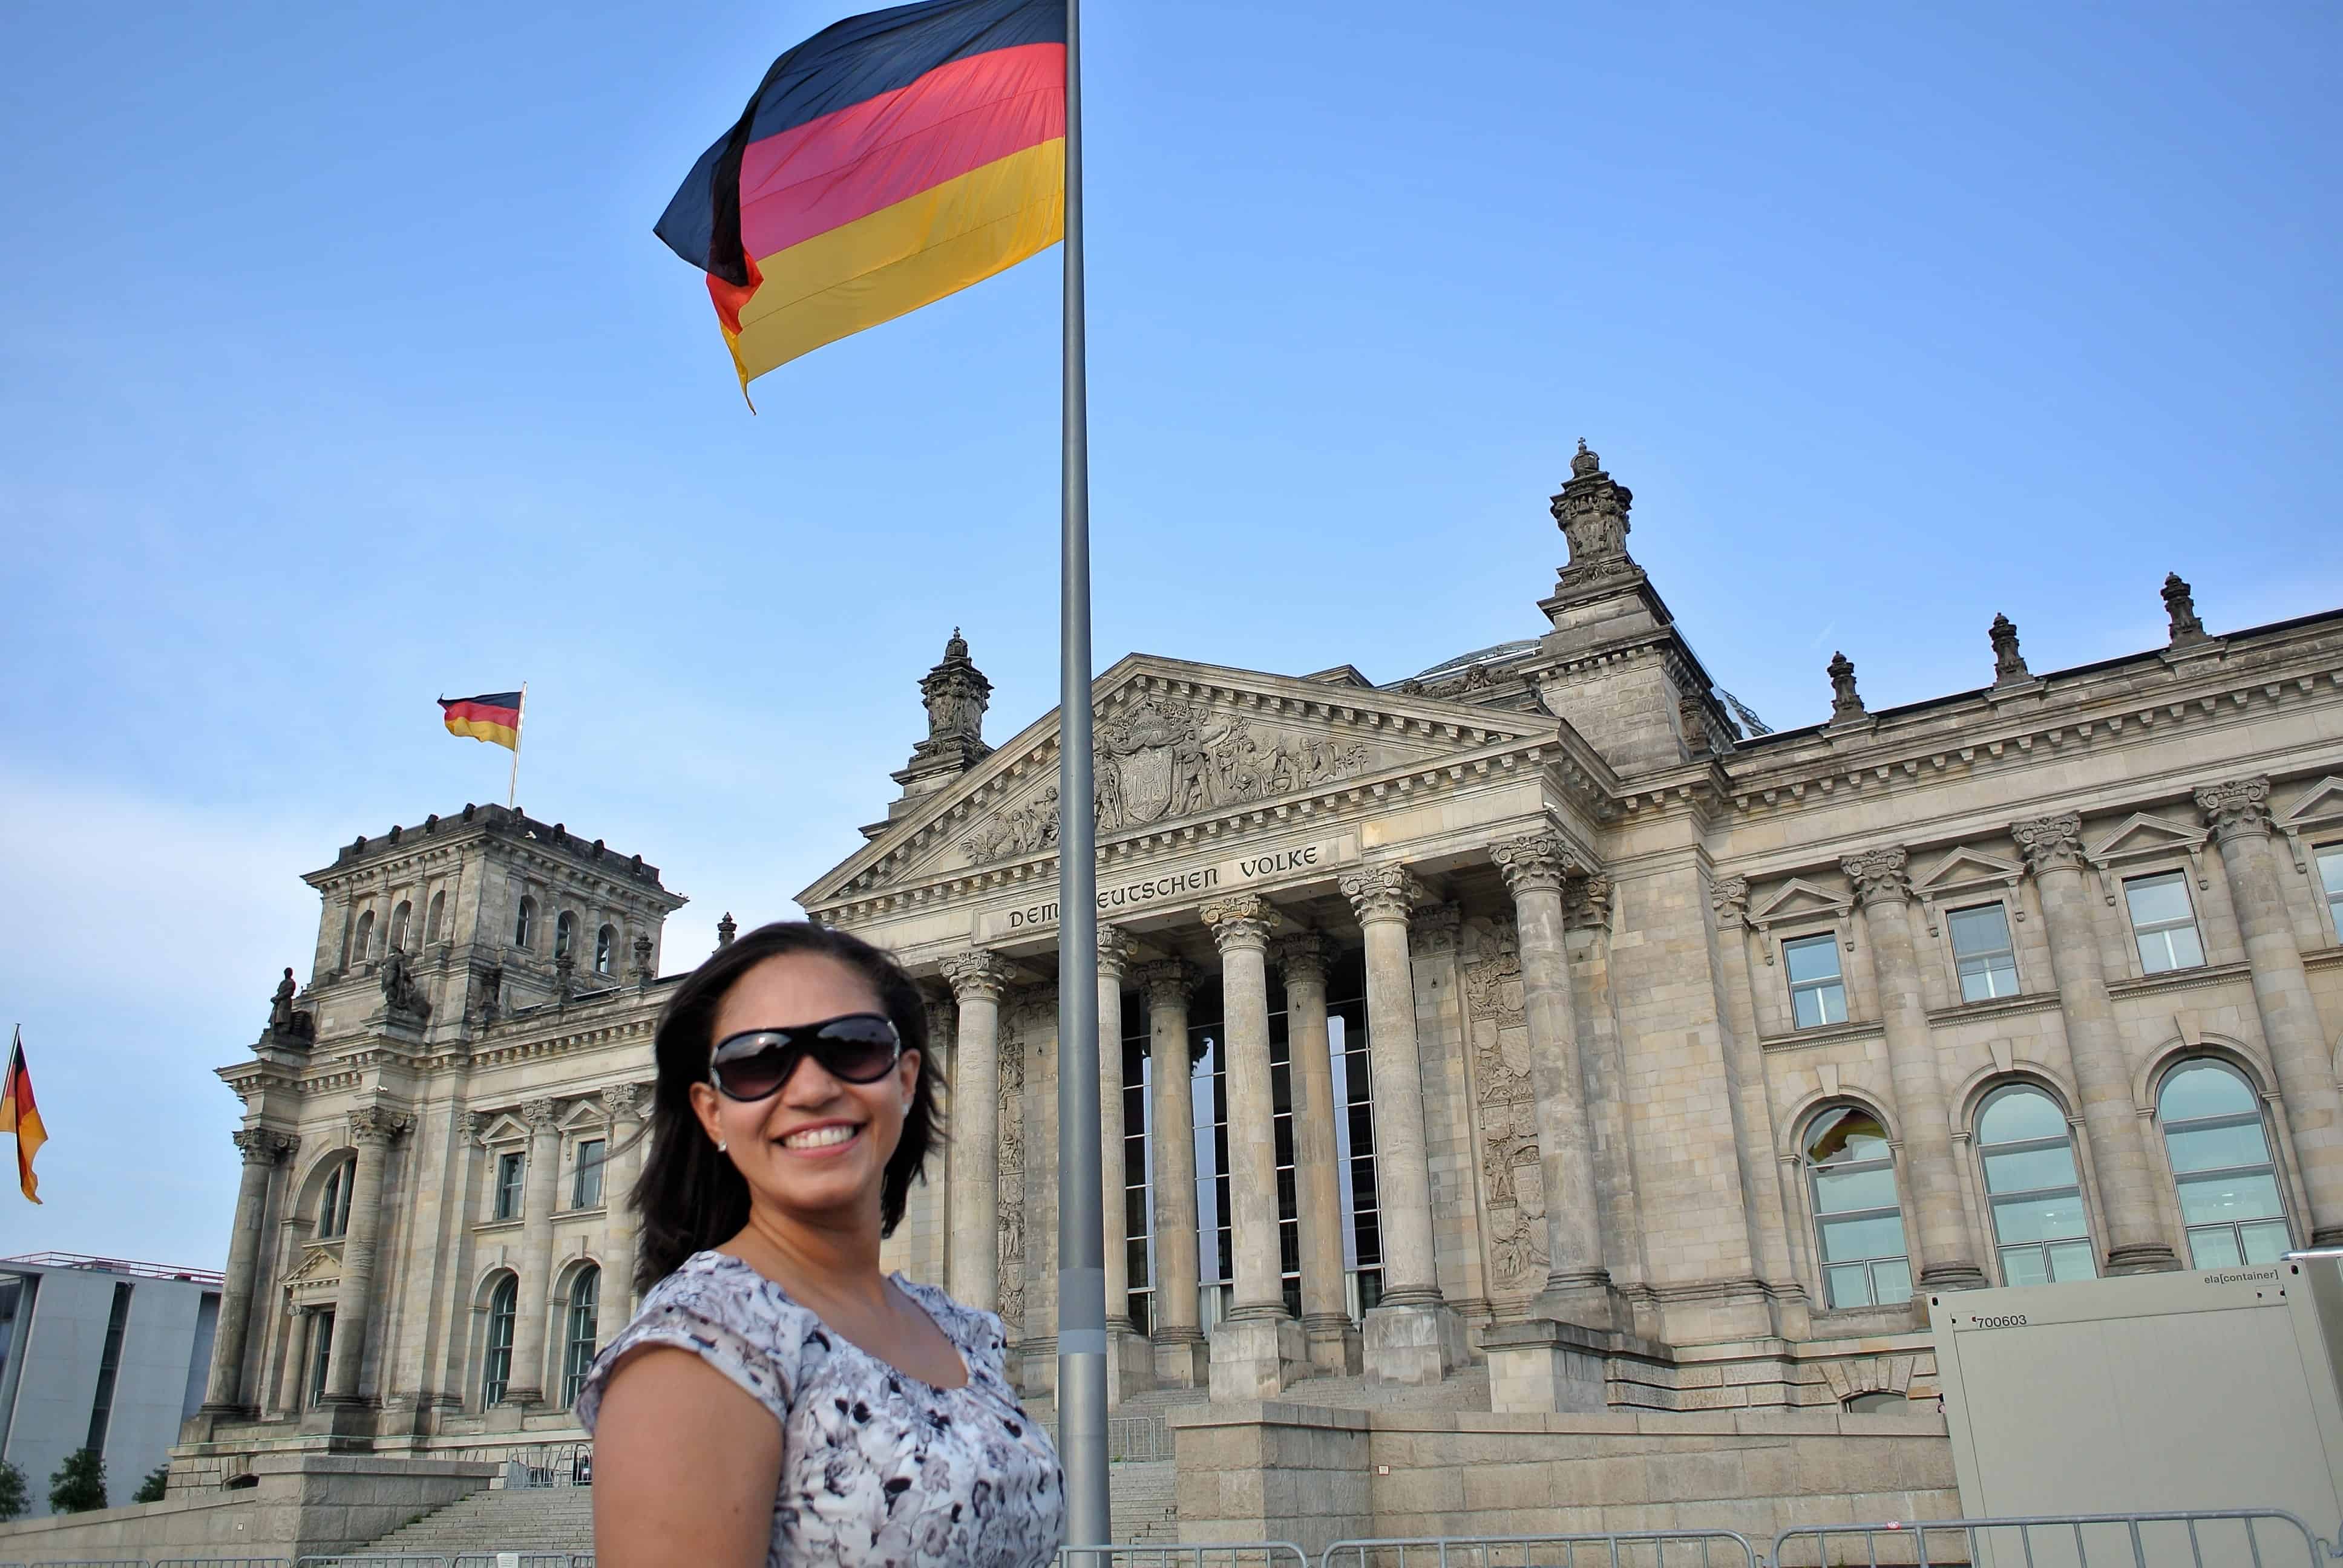 Prédio do Parlamento (Reichstag)